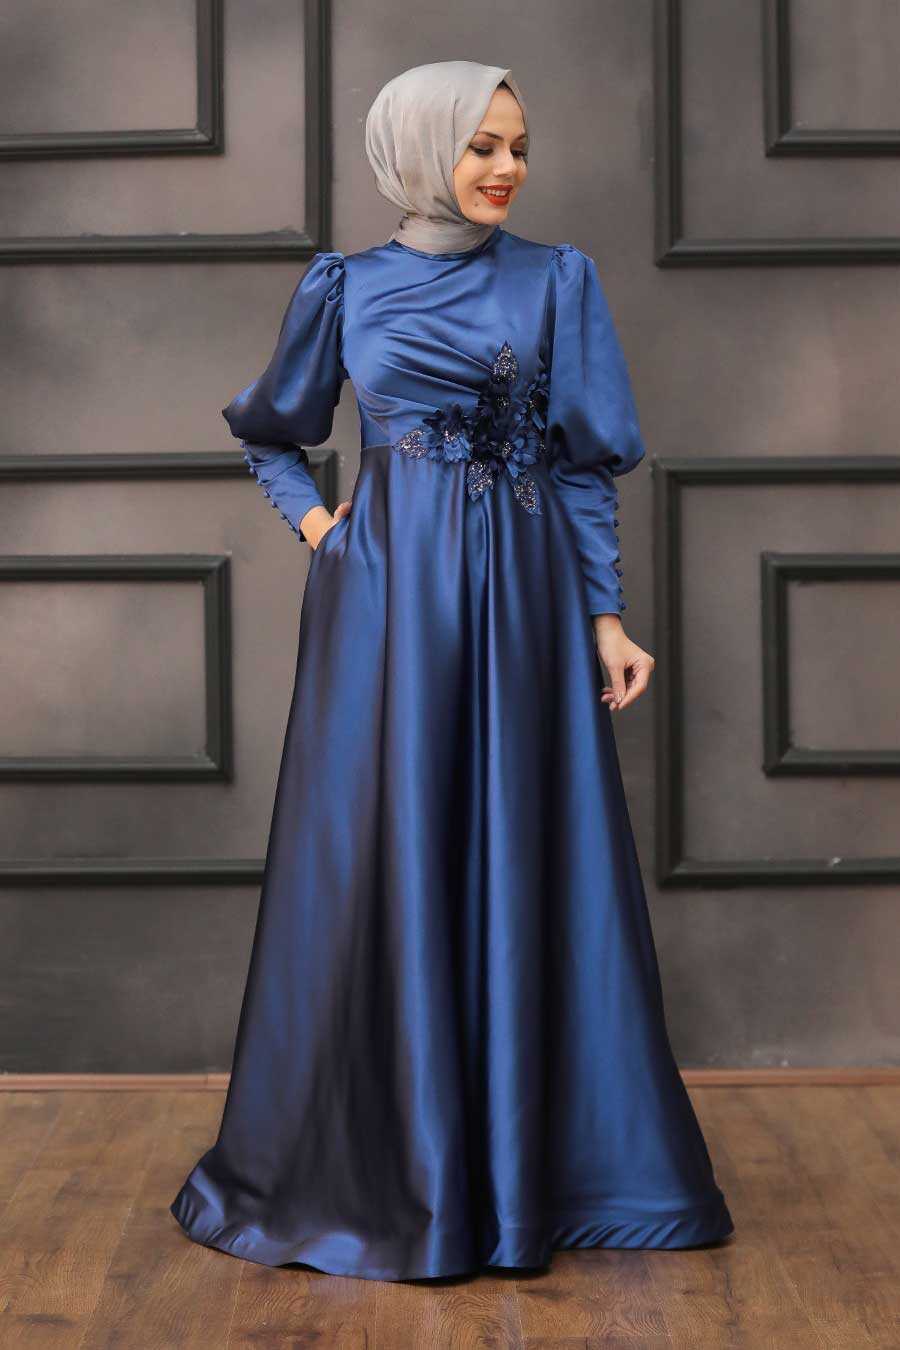 İndigo Blue Hijab Evening Dress 2205IM - Neva-style.com